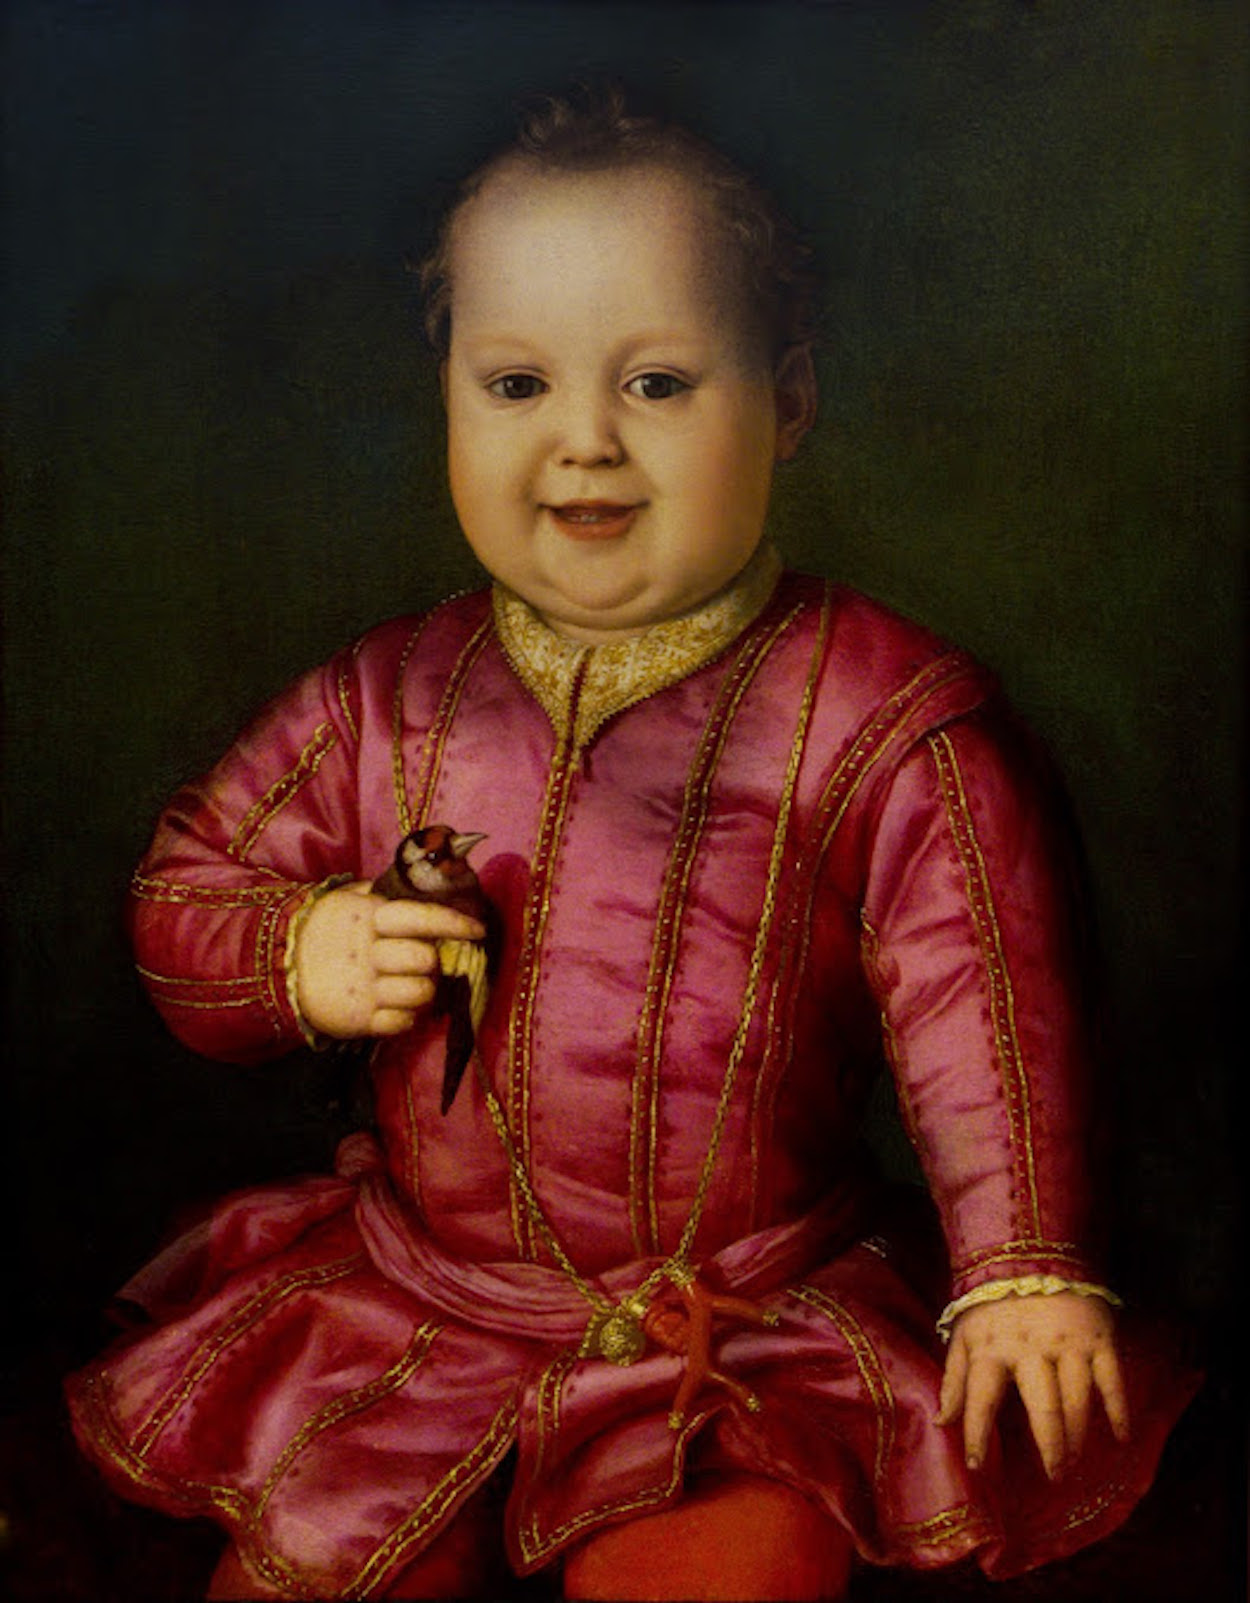 Giovanni de' Medici’nin Çocukluk Portresi by Agnolo Bronzino - circa 1545 